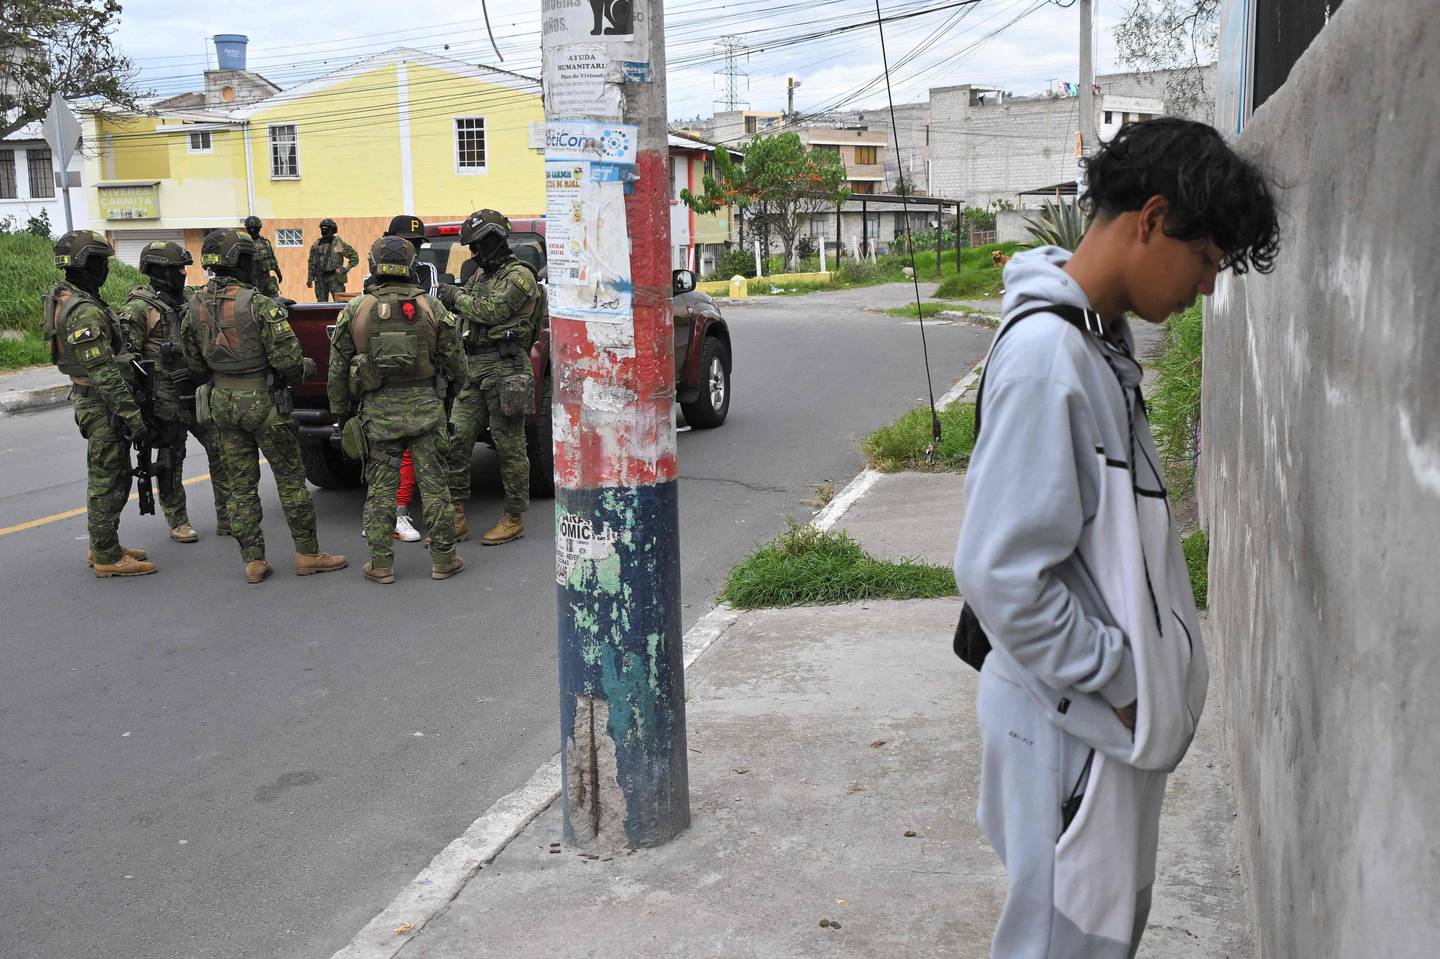 Miembros del ejército de Ecuador tomaron las calles de las principales ciudades de Ecuador para retomar el control de la seguridad en el país. Las pandillas se replegaron desde que el presidente Daniel Noboa estado de guerra en el país.